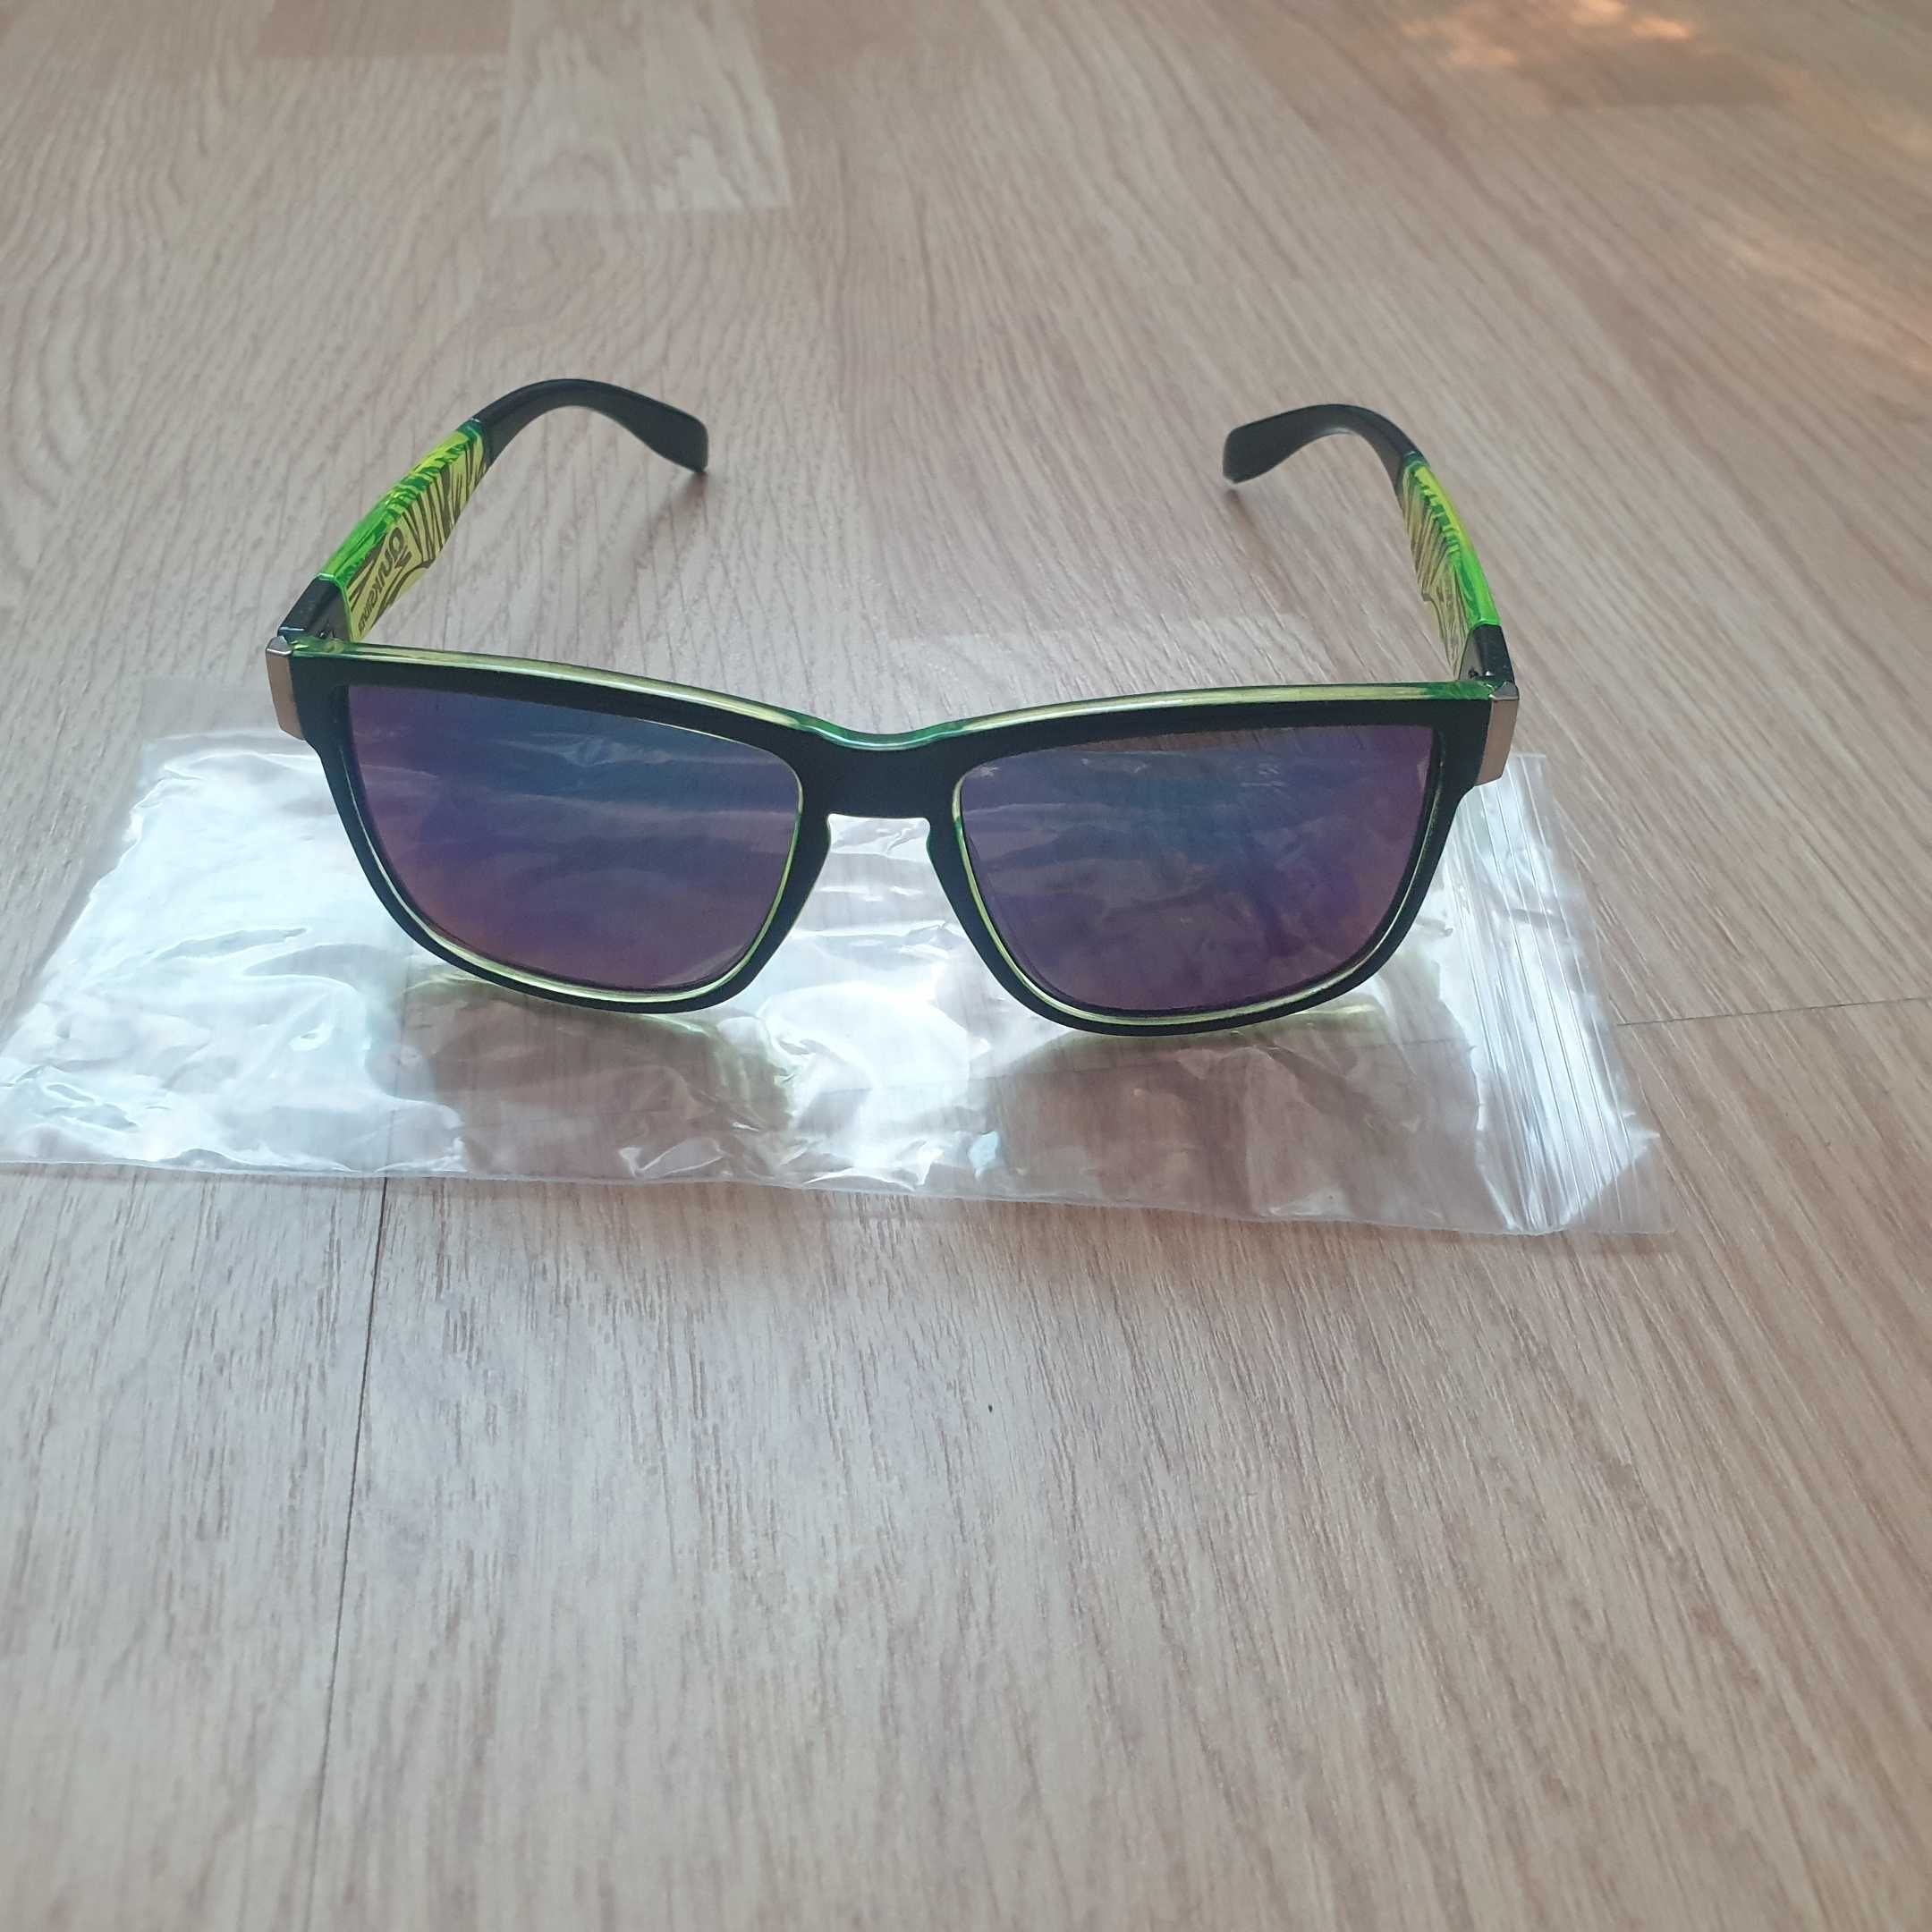 Quiksilver okulary przeciwsłoneczne oprawki zielony motyw